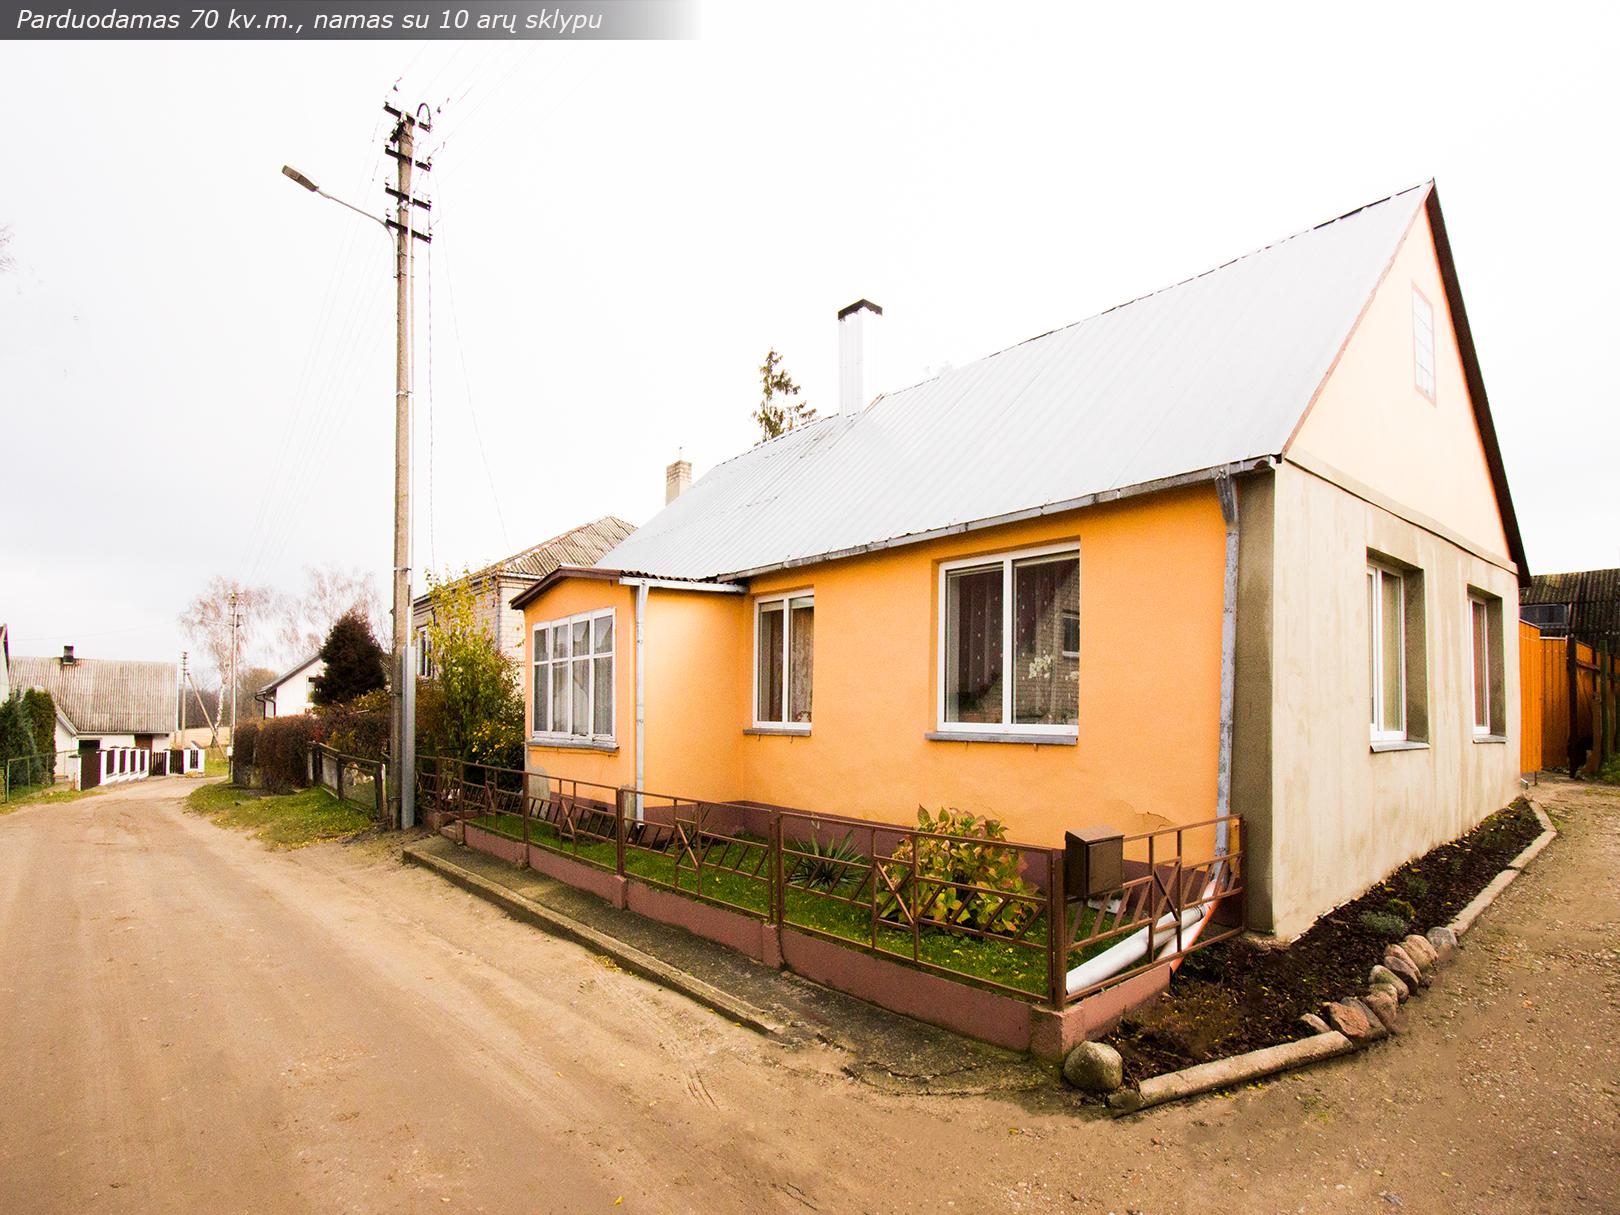 Kalvarijos miestelyje, 70 kv.m., namas su 10 arų žemės sklypu, Laukų g., Kalvarija.